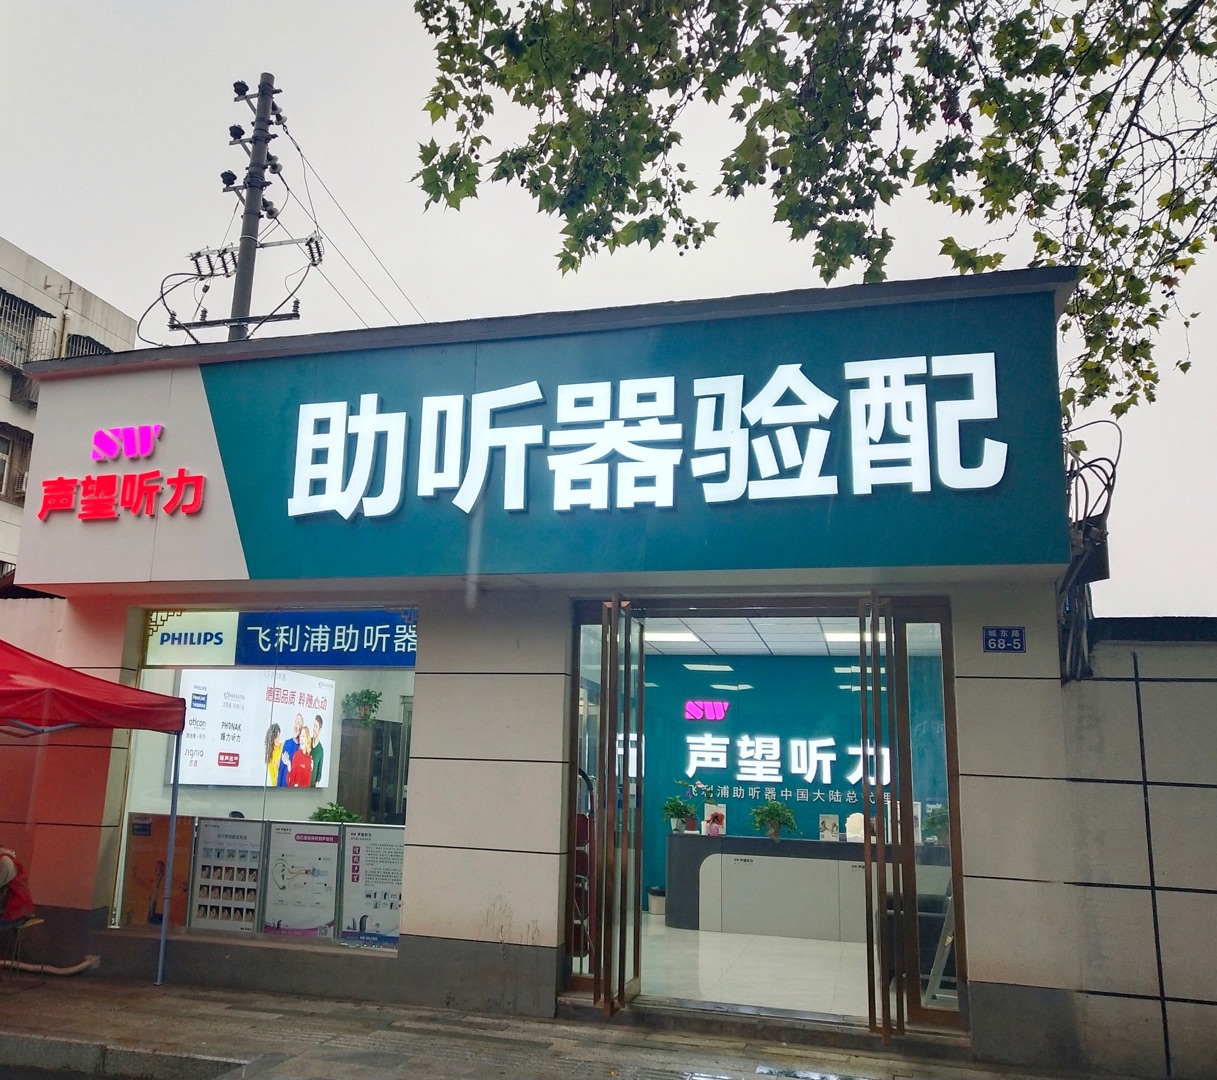 声望听力-郑州服务中心店 验配环境展示